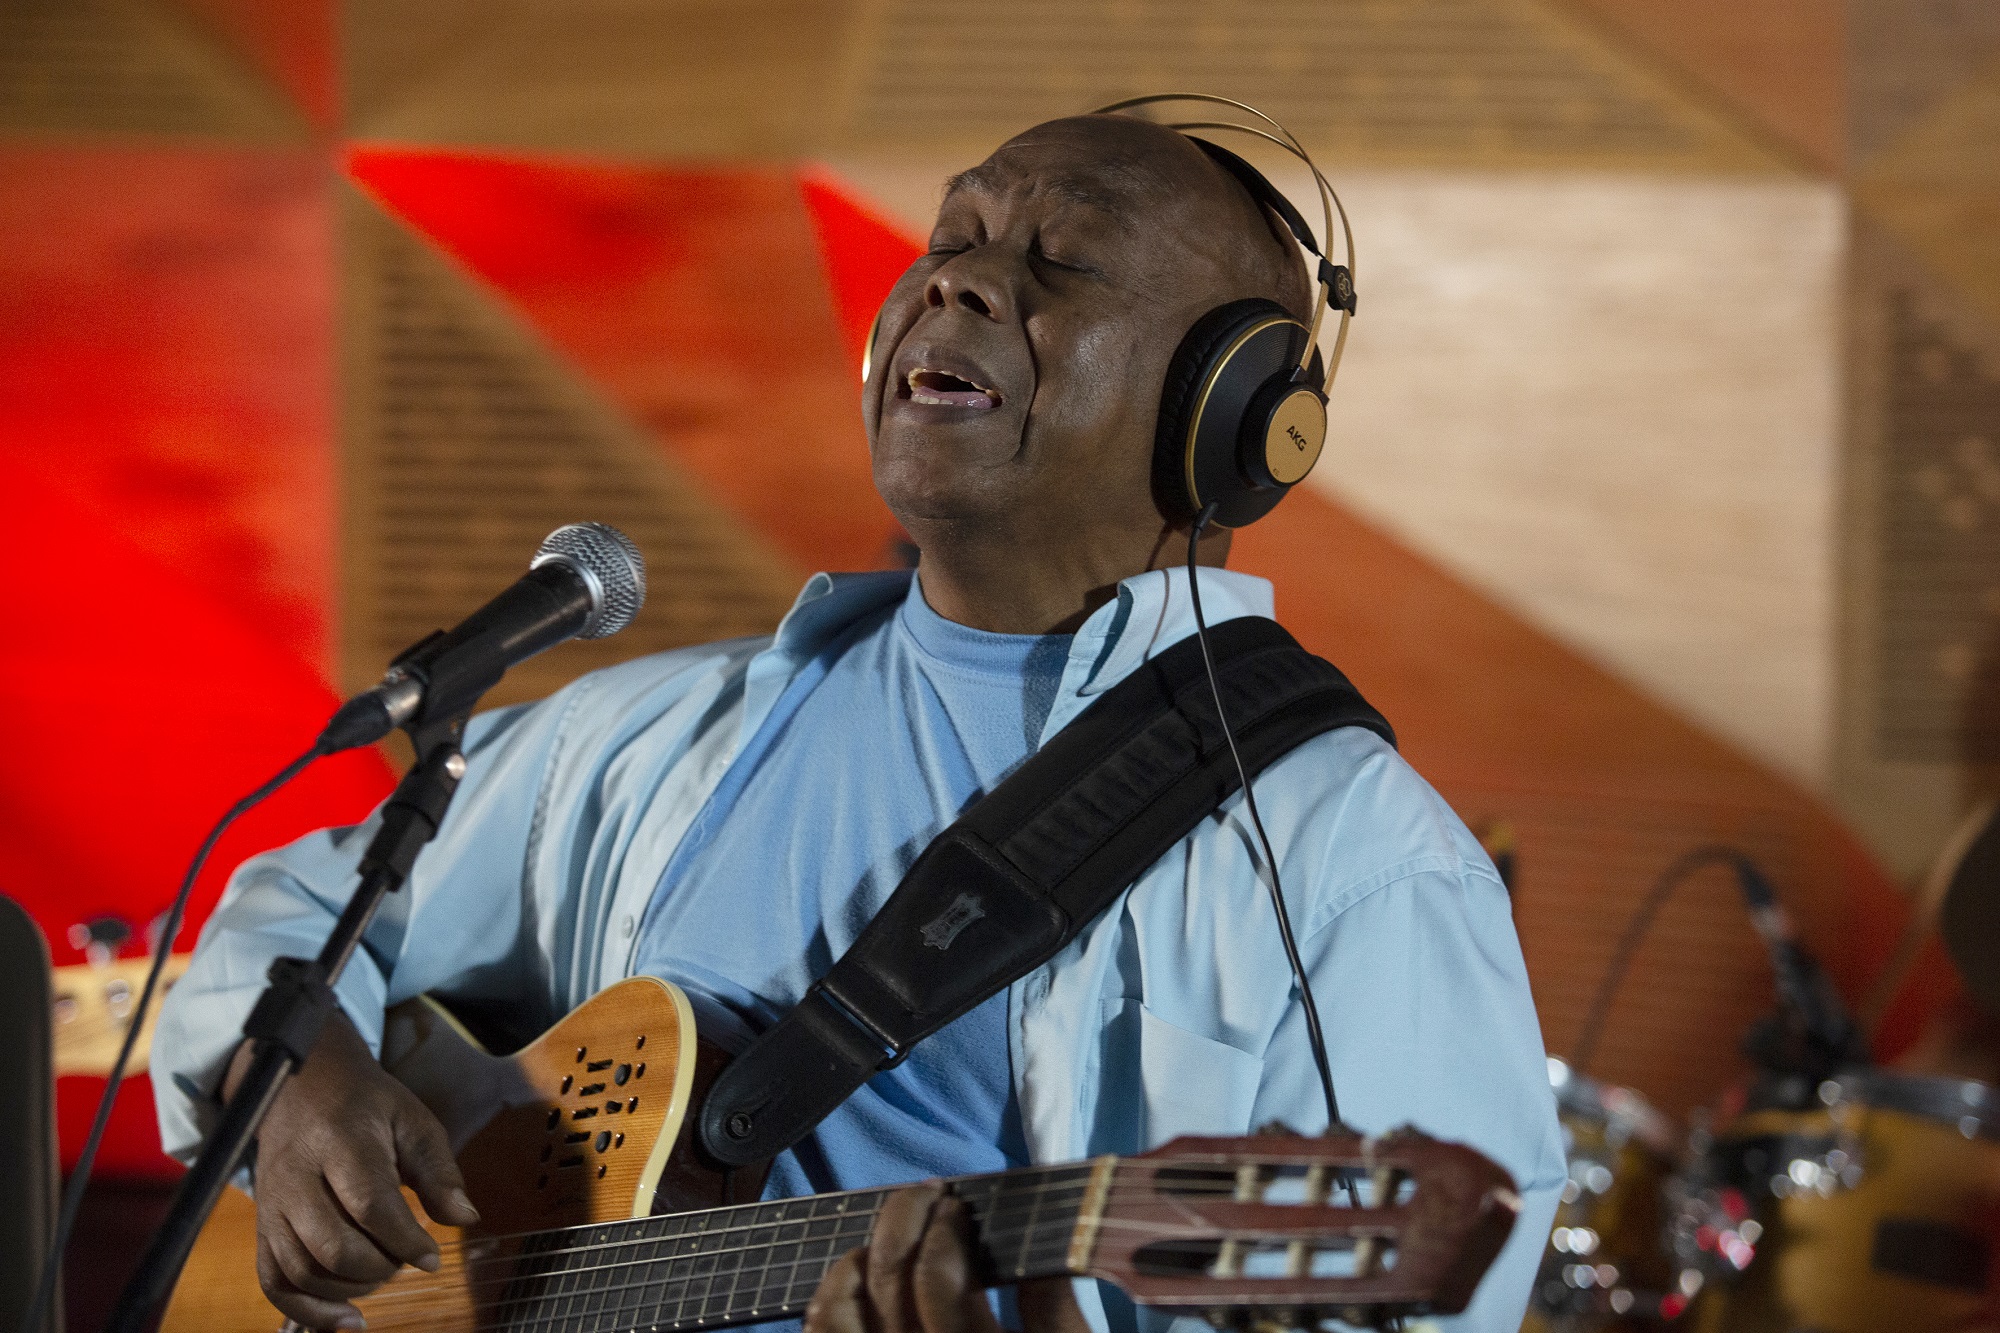 Imagem mostra homem de camisa e camiseta azul segurando um violão e cantando em um microfone. Ele também usa um fone.